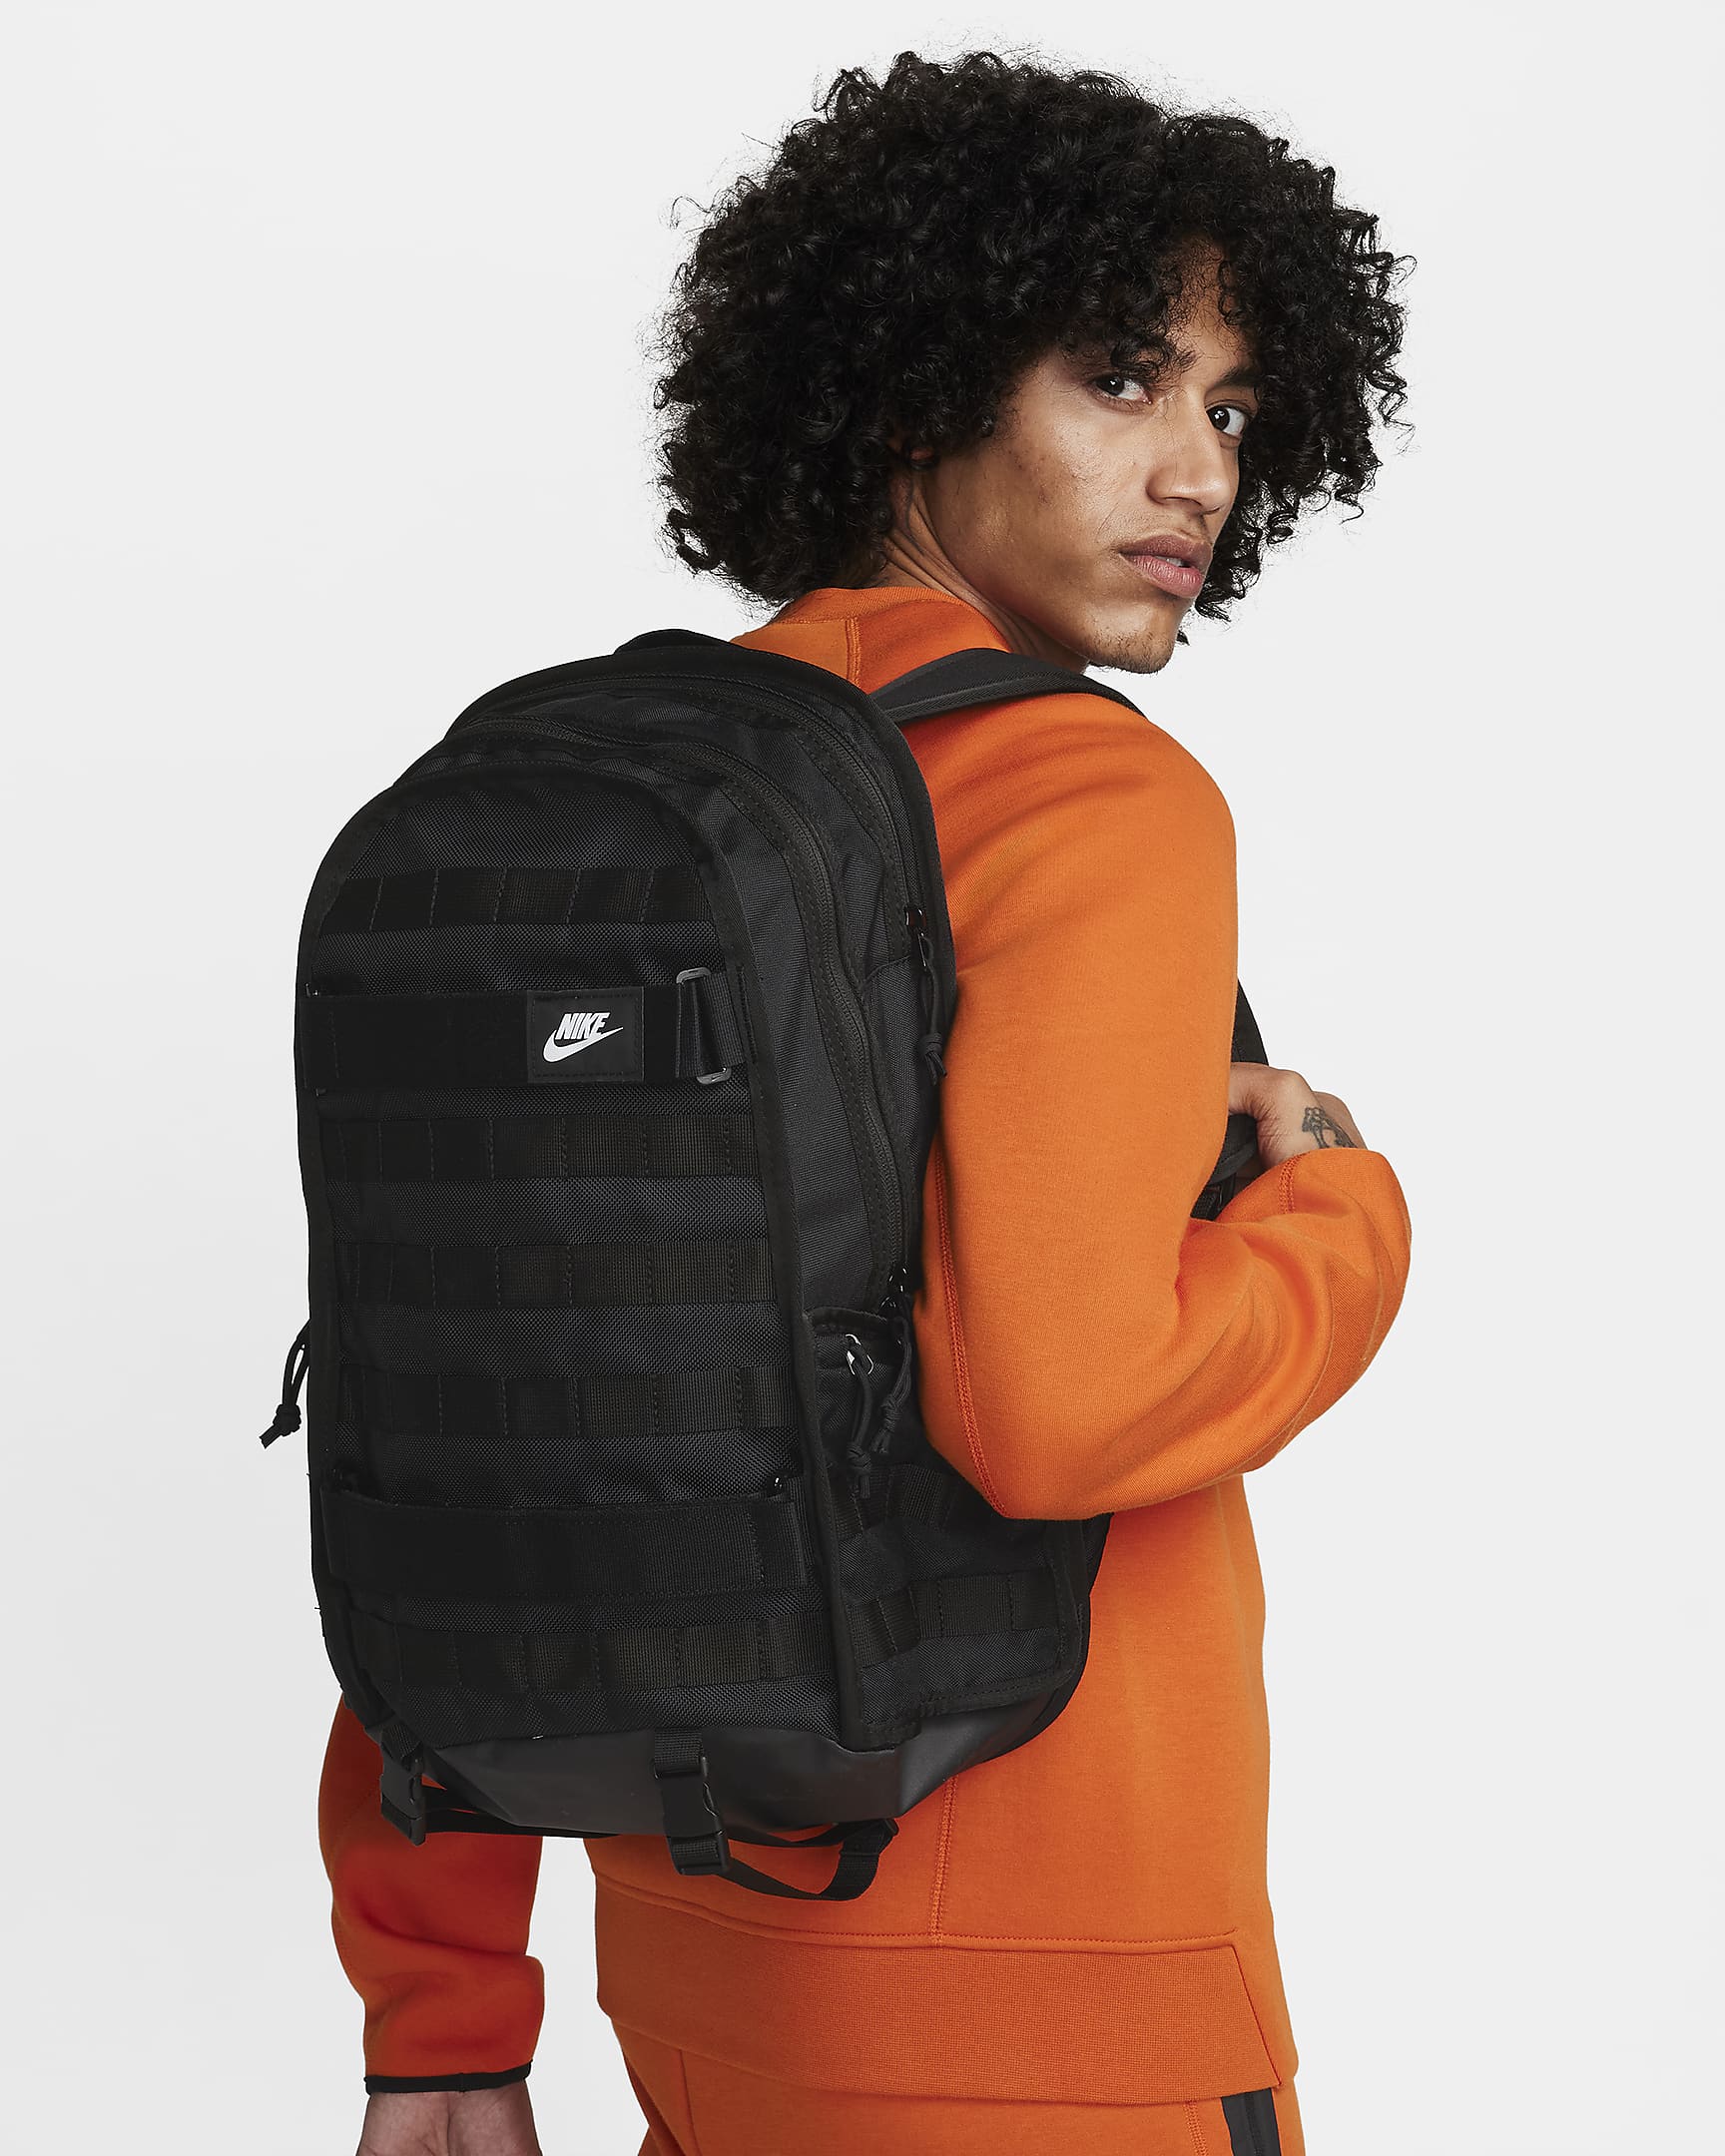 Nike Sportswear RPM Backpack (26L) - Black/Black/White